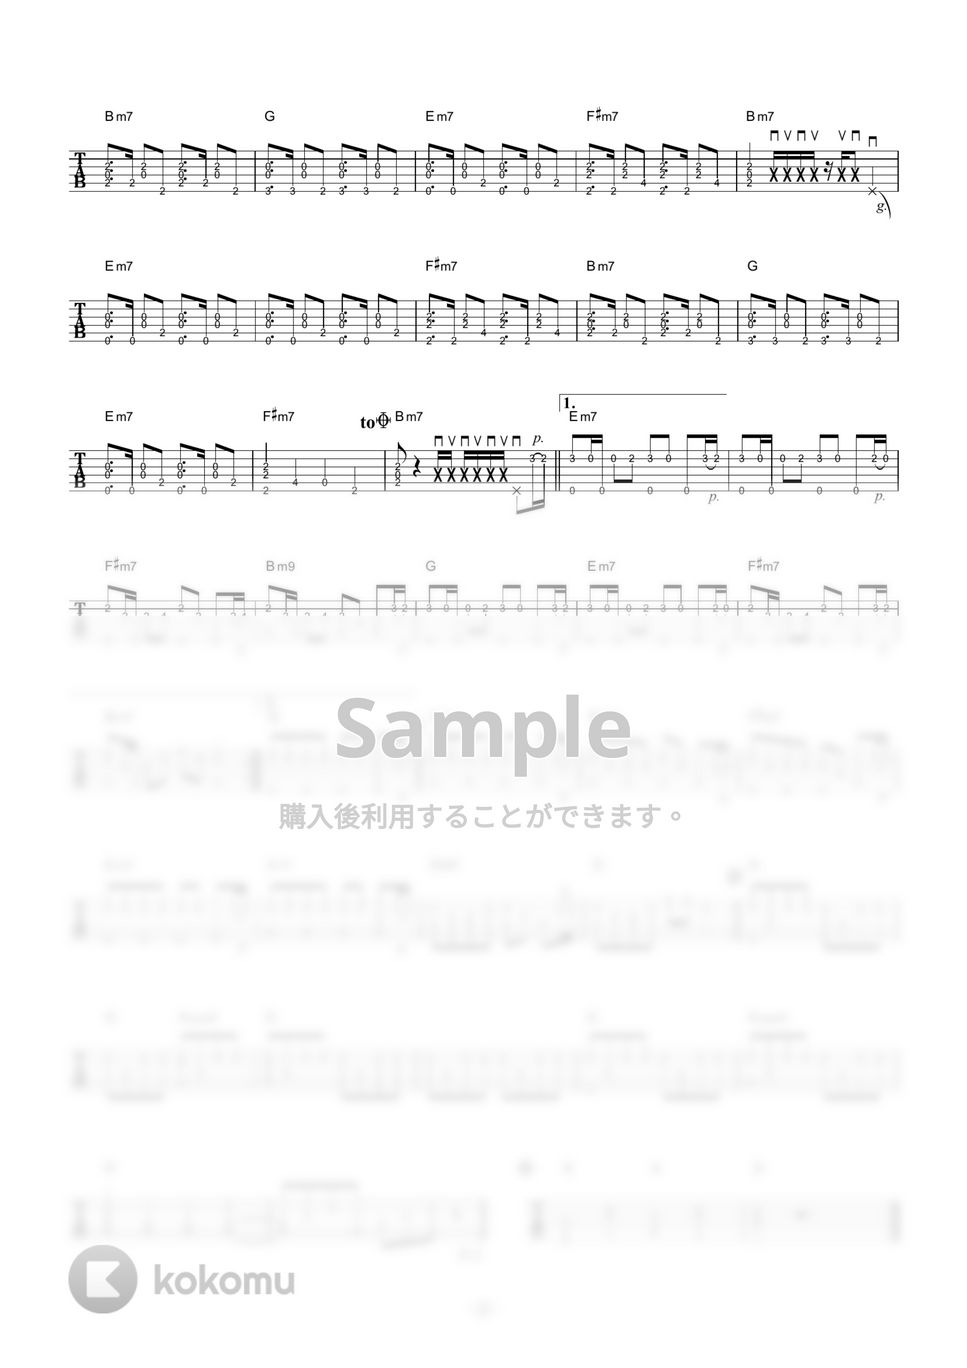 きゃりーぱみゅぱみゅ - CANDY CANDY (ギター伴奏/イントロ・間奏ソロギター) by 伴奏屋TAB譜